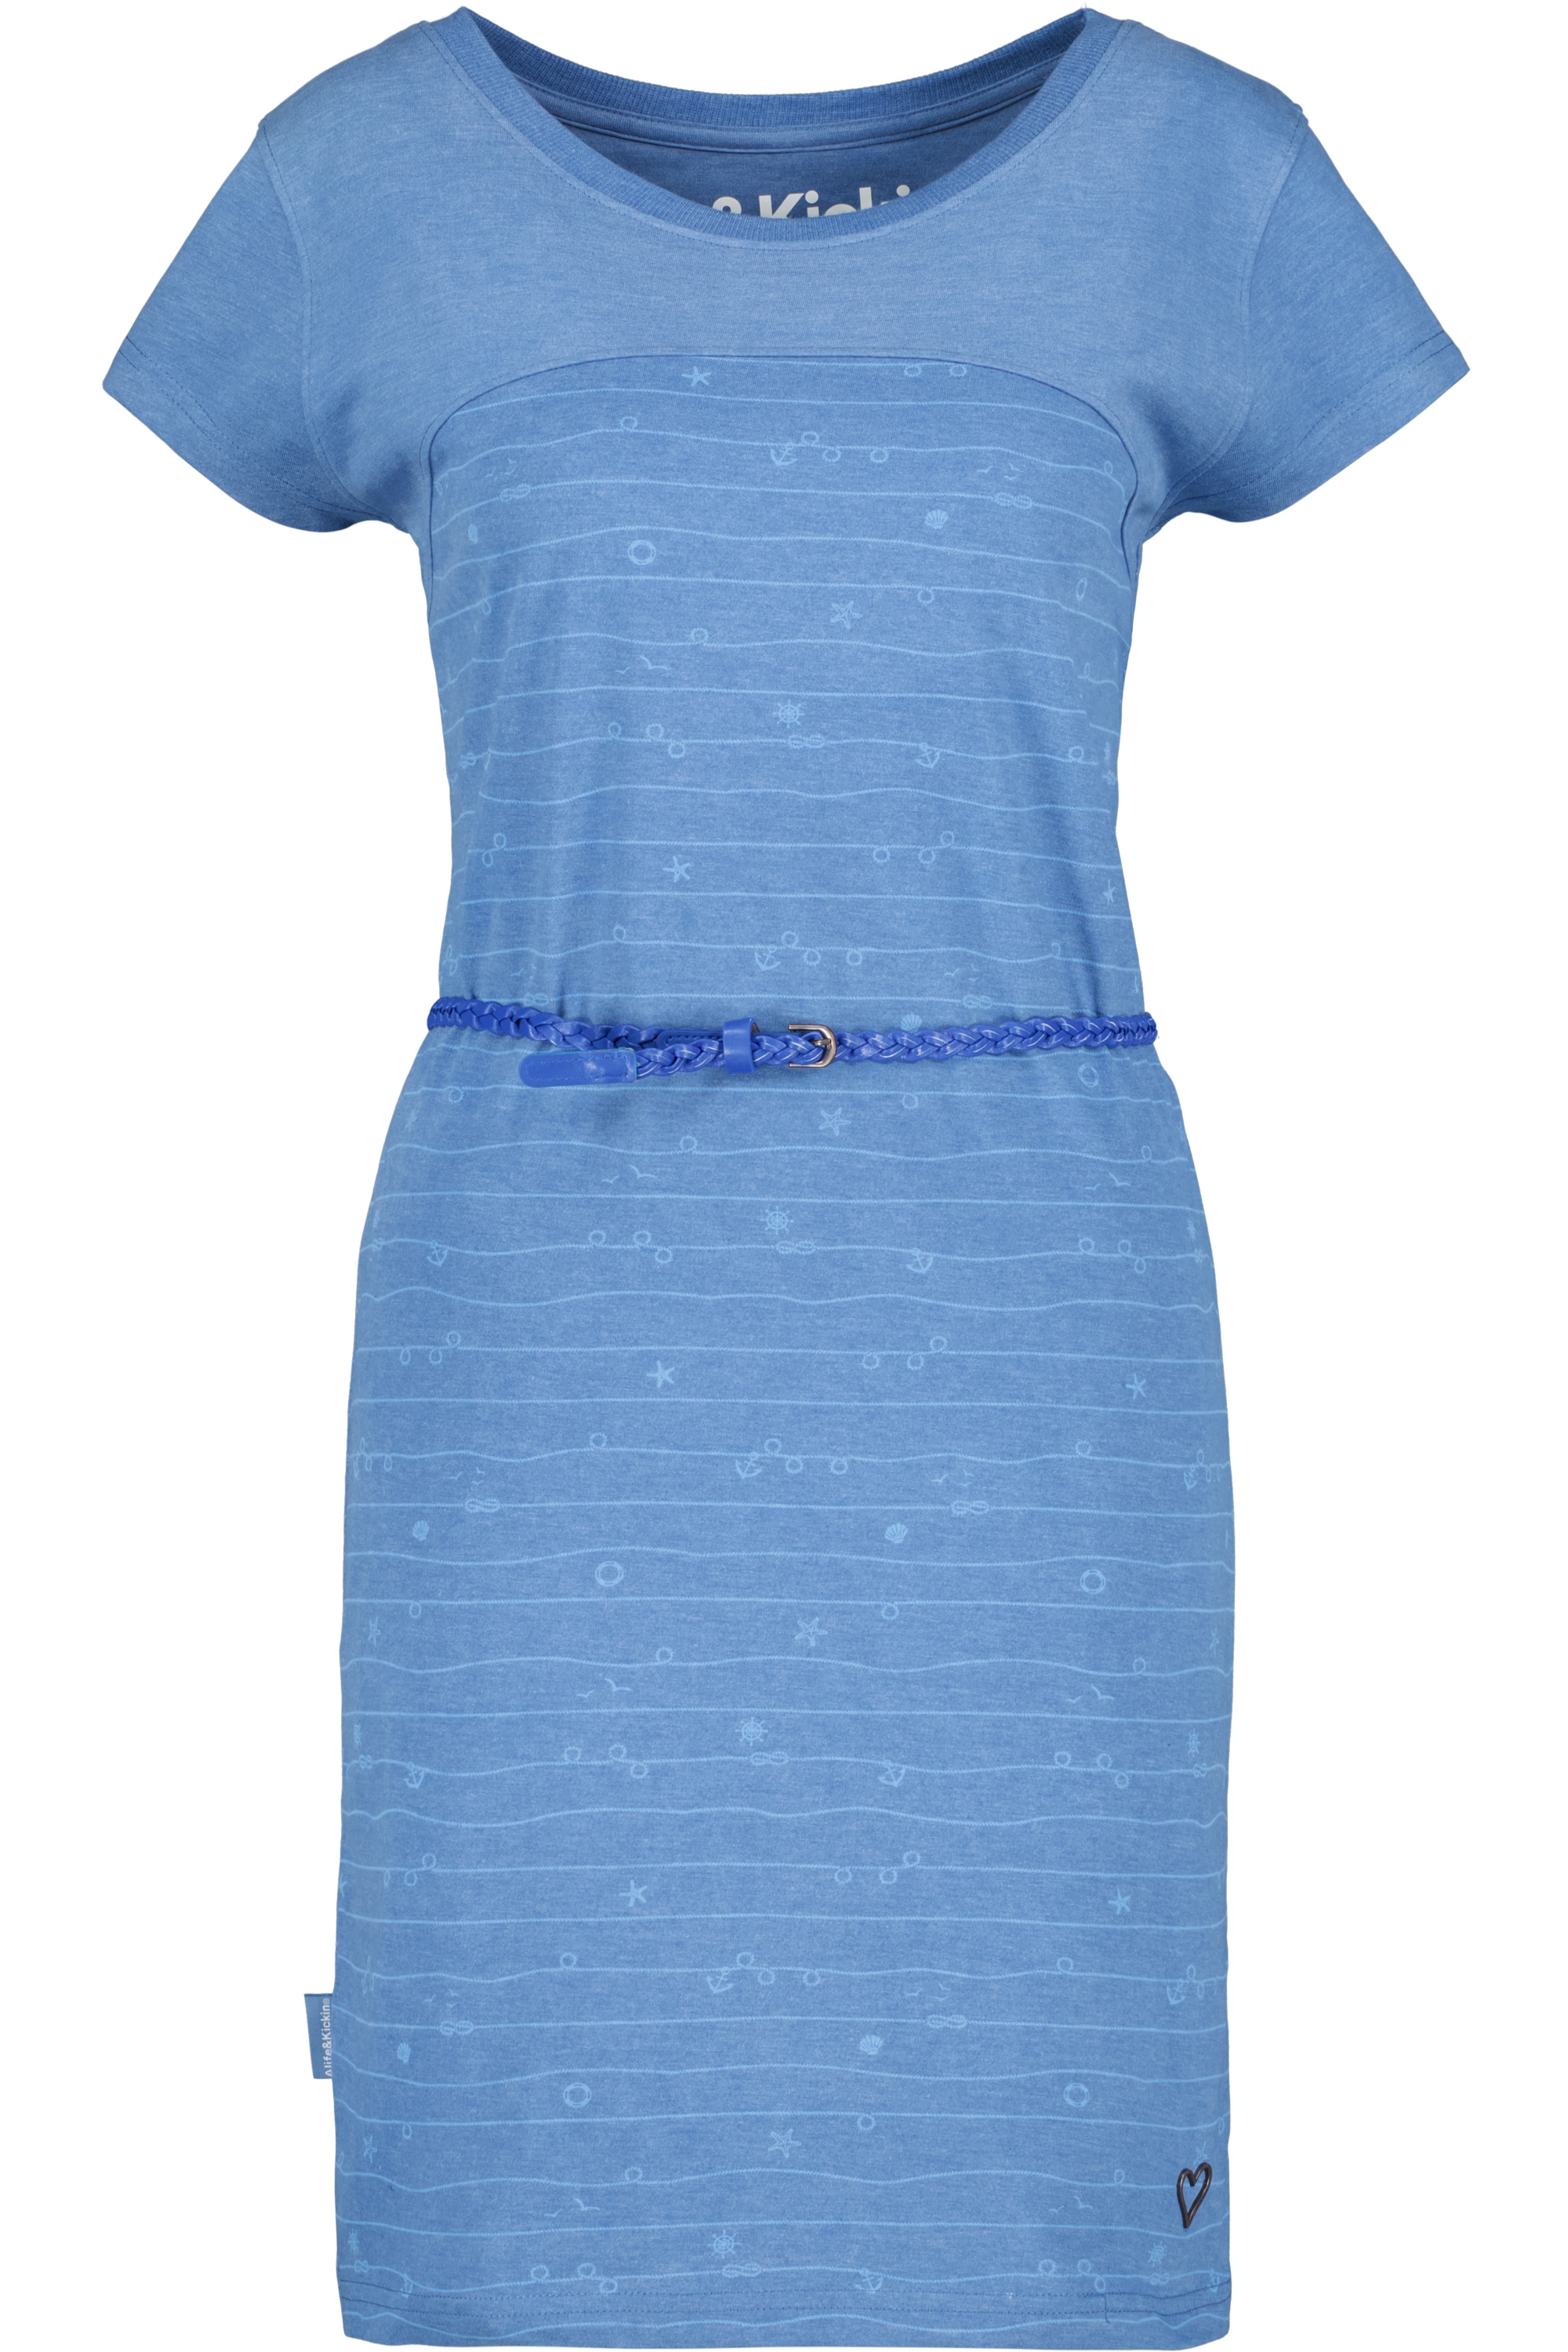 Alife & Kickin Sommerkleid, »ClariceAK Dress Damen kaufen Blusenkleid Kleid«